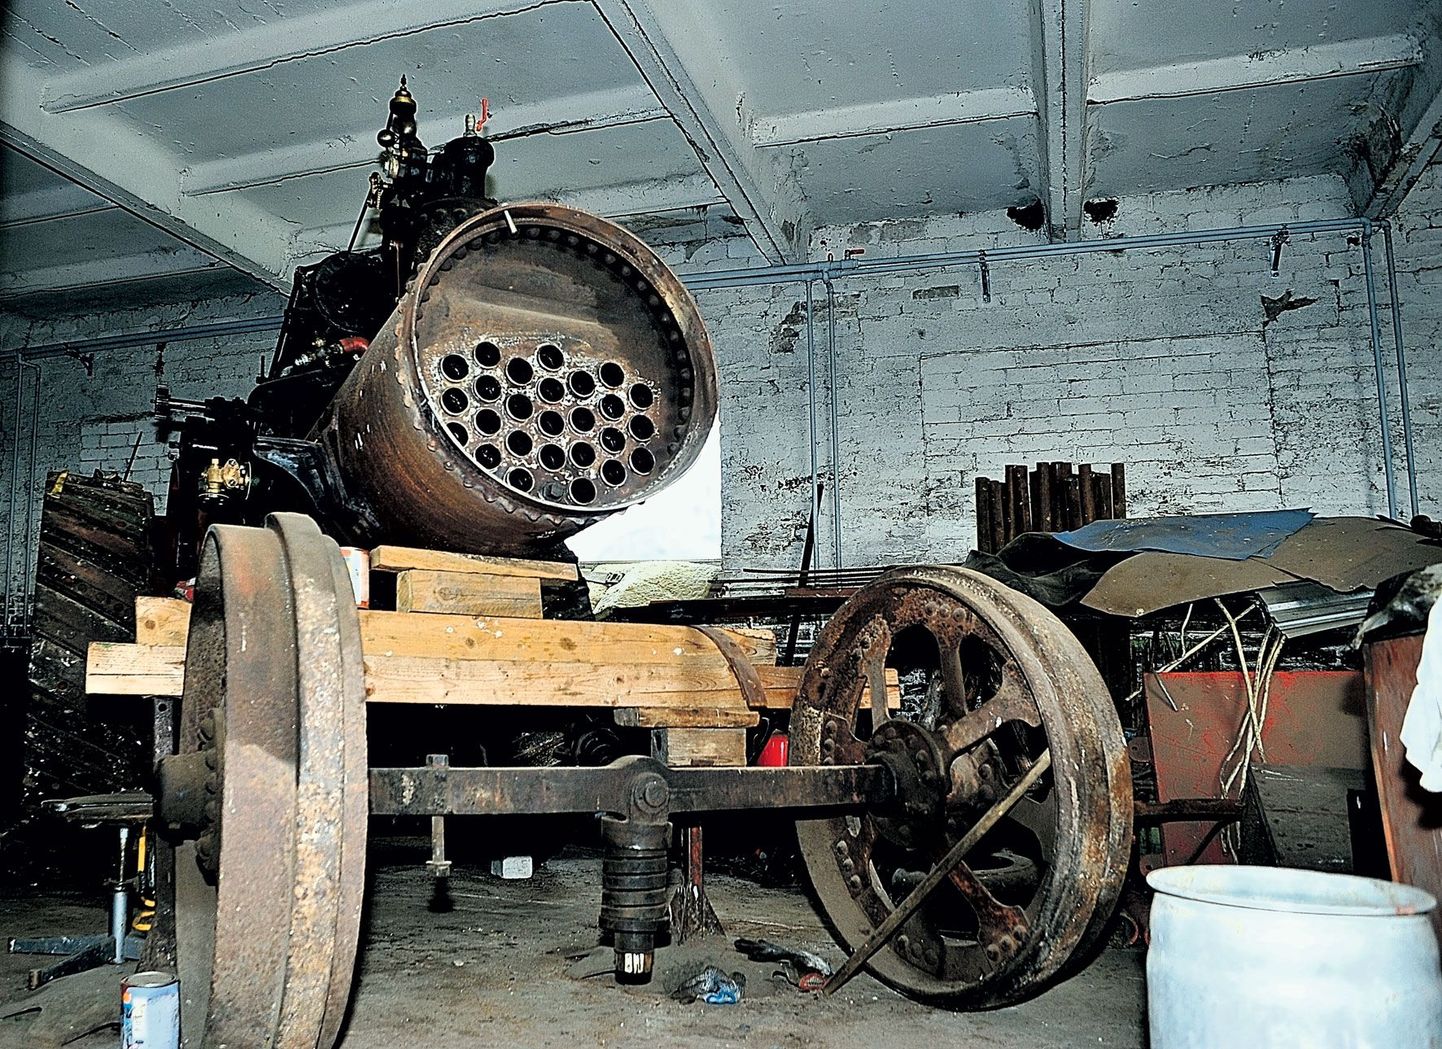 Tõnu Ojamaa taastab kodutalus Tartumaal Aardlas autentsel kujul 1936. aastal Inglismaal valminud aurumasinat. Umbes kolmveerand töödest on praeguseks tehtud, kinnitab meistrimees. Valmis loodetakse saada järgmisel aastal.